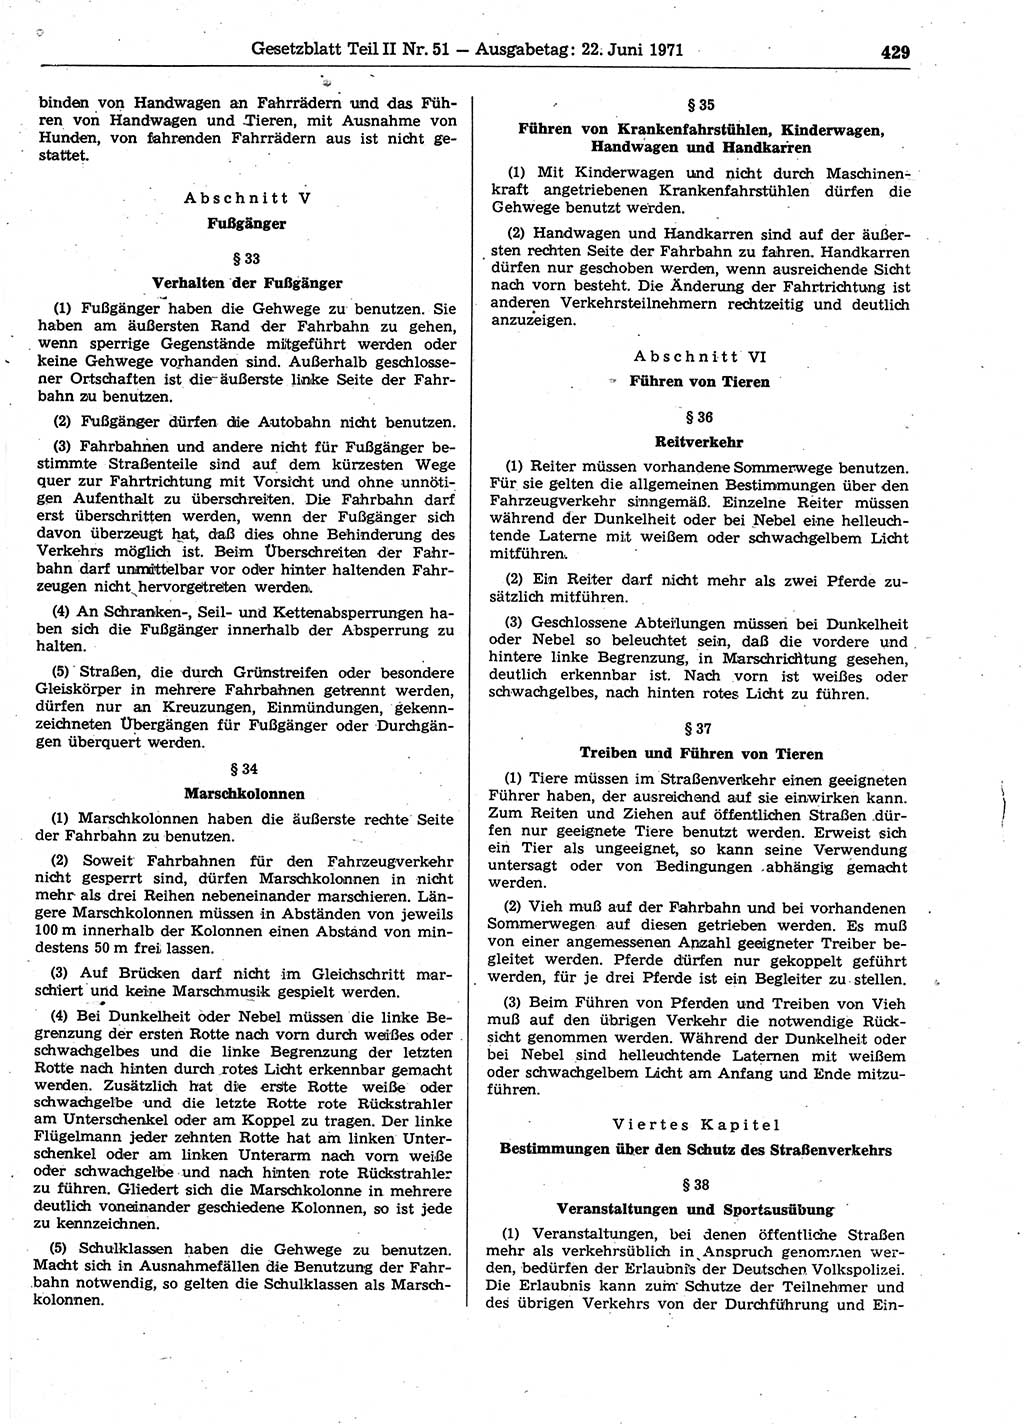 Gesetzblatt (GBl.) der Deutschen Demokratischen Republik (DDR) Teil ⅠⅠ 1971, Seite 429 (GBl. DDR ⅠⅠ 1971, S. 429)